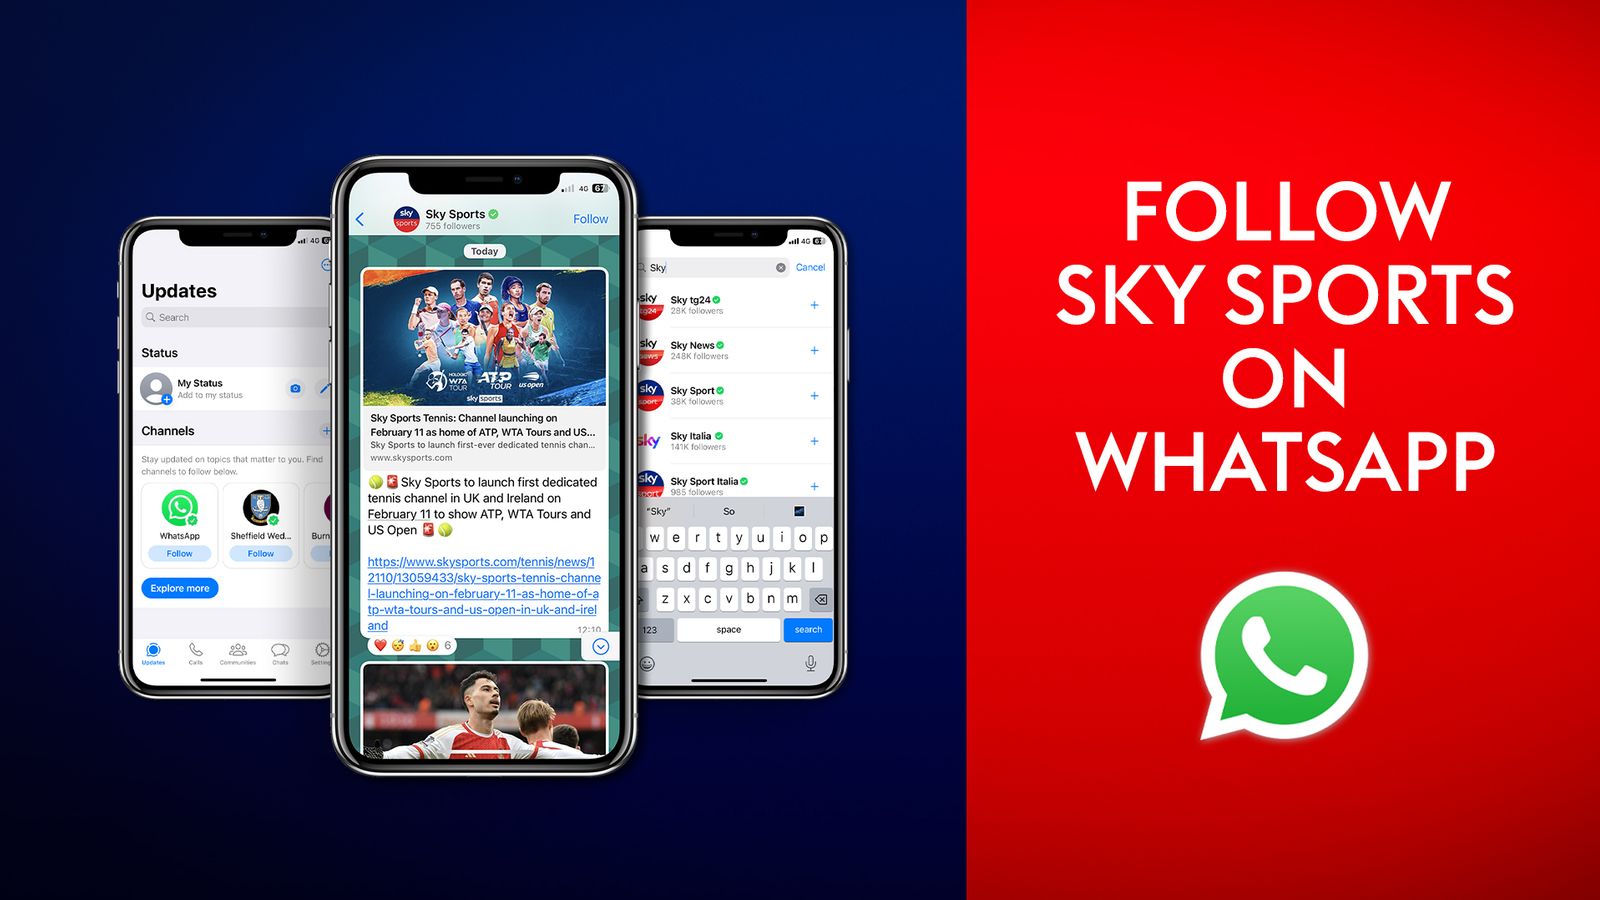 WhatsApp 上的天空体育：如何关注我们的频道以获取最新新闻、专题和亮点 |足球新闻